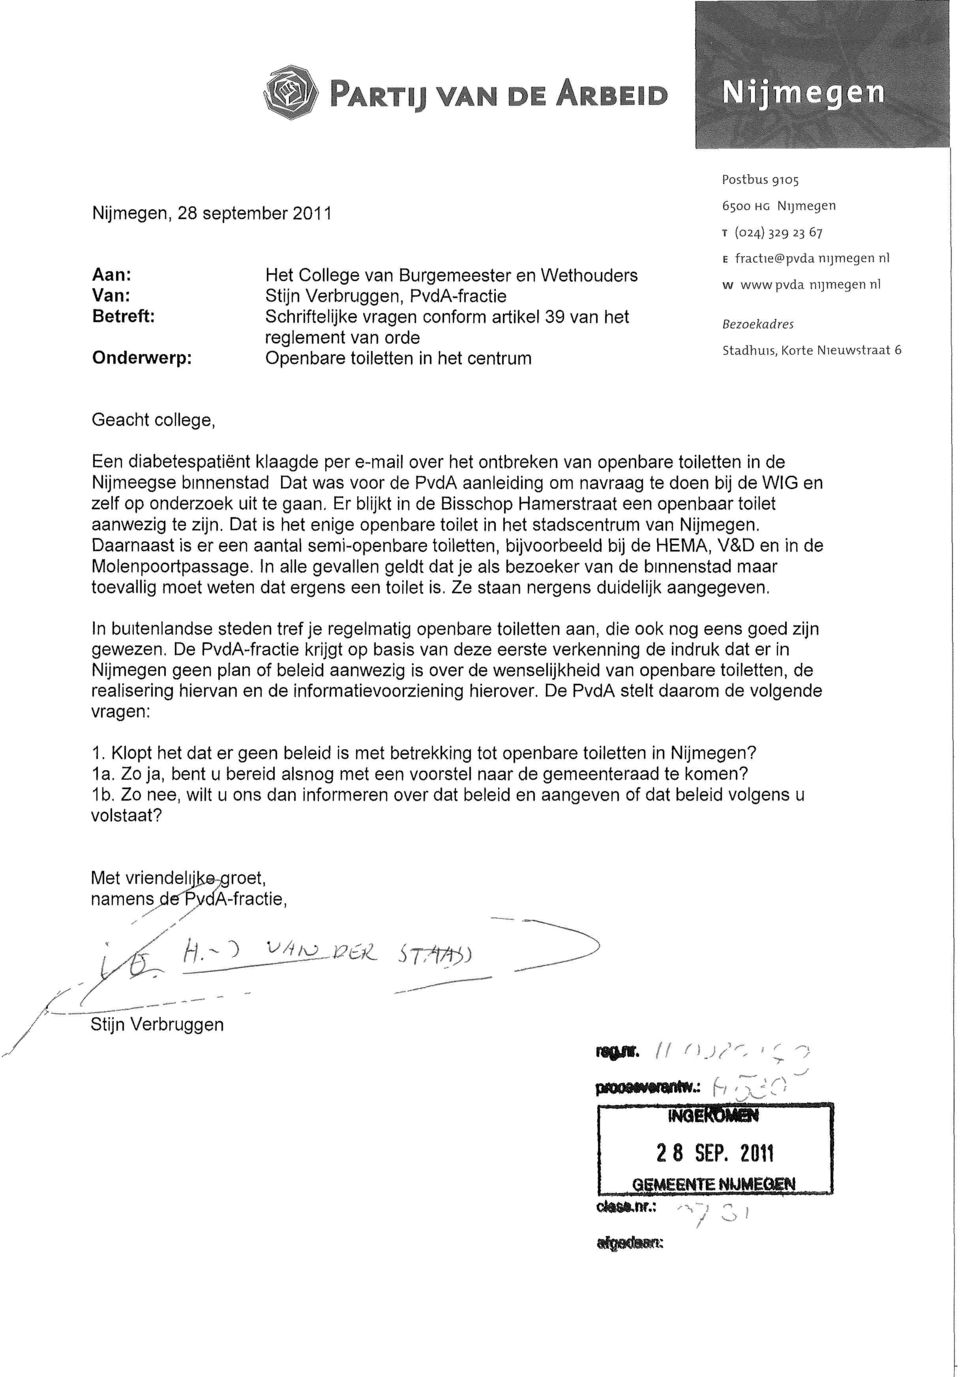 Geacht college, Een diabetespatient klaagde per e-mail over het ontbreken van openbare toiletten in de Nijmeegse binnenstad Dat was voor de PvdA aanleiding om navraag te doen bij de WIG en zelf op